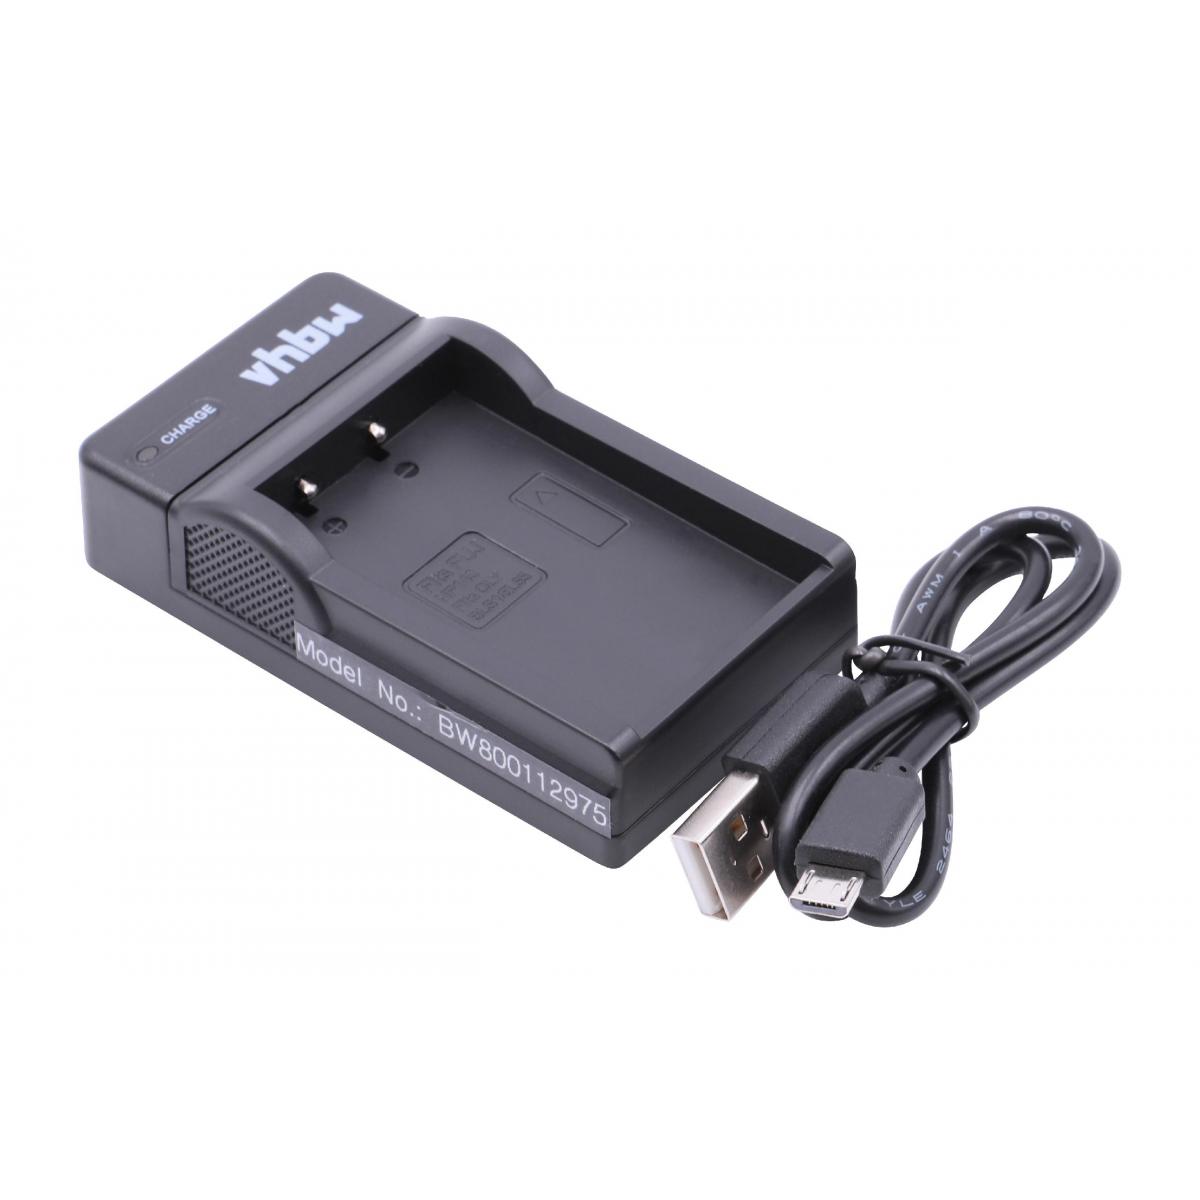 Vhbw - vhbw Chargeur USB de batterie compatible avec Olympus OM-D E-M10 Mark IV, E-M10 batterie appareil photo digital, DSLR, action cam - Batterie Photo & Video